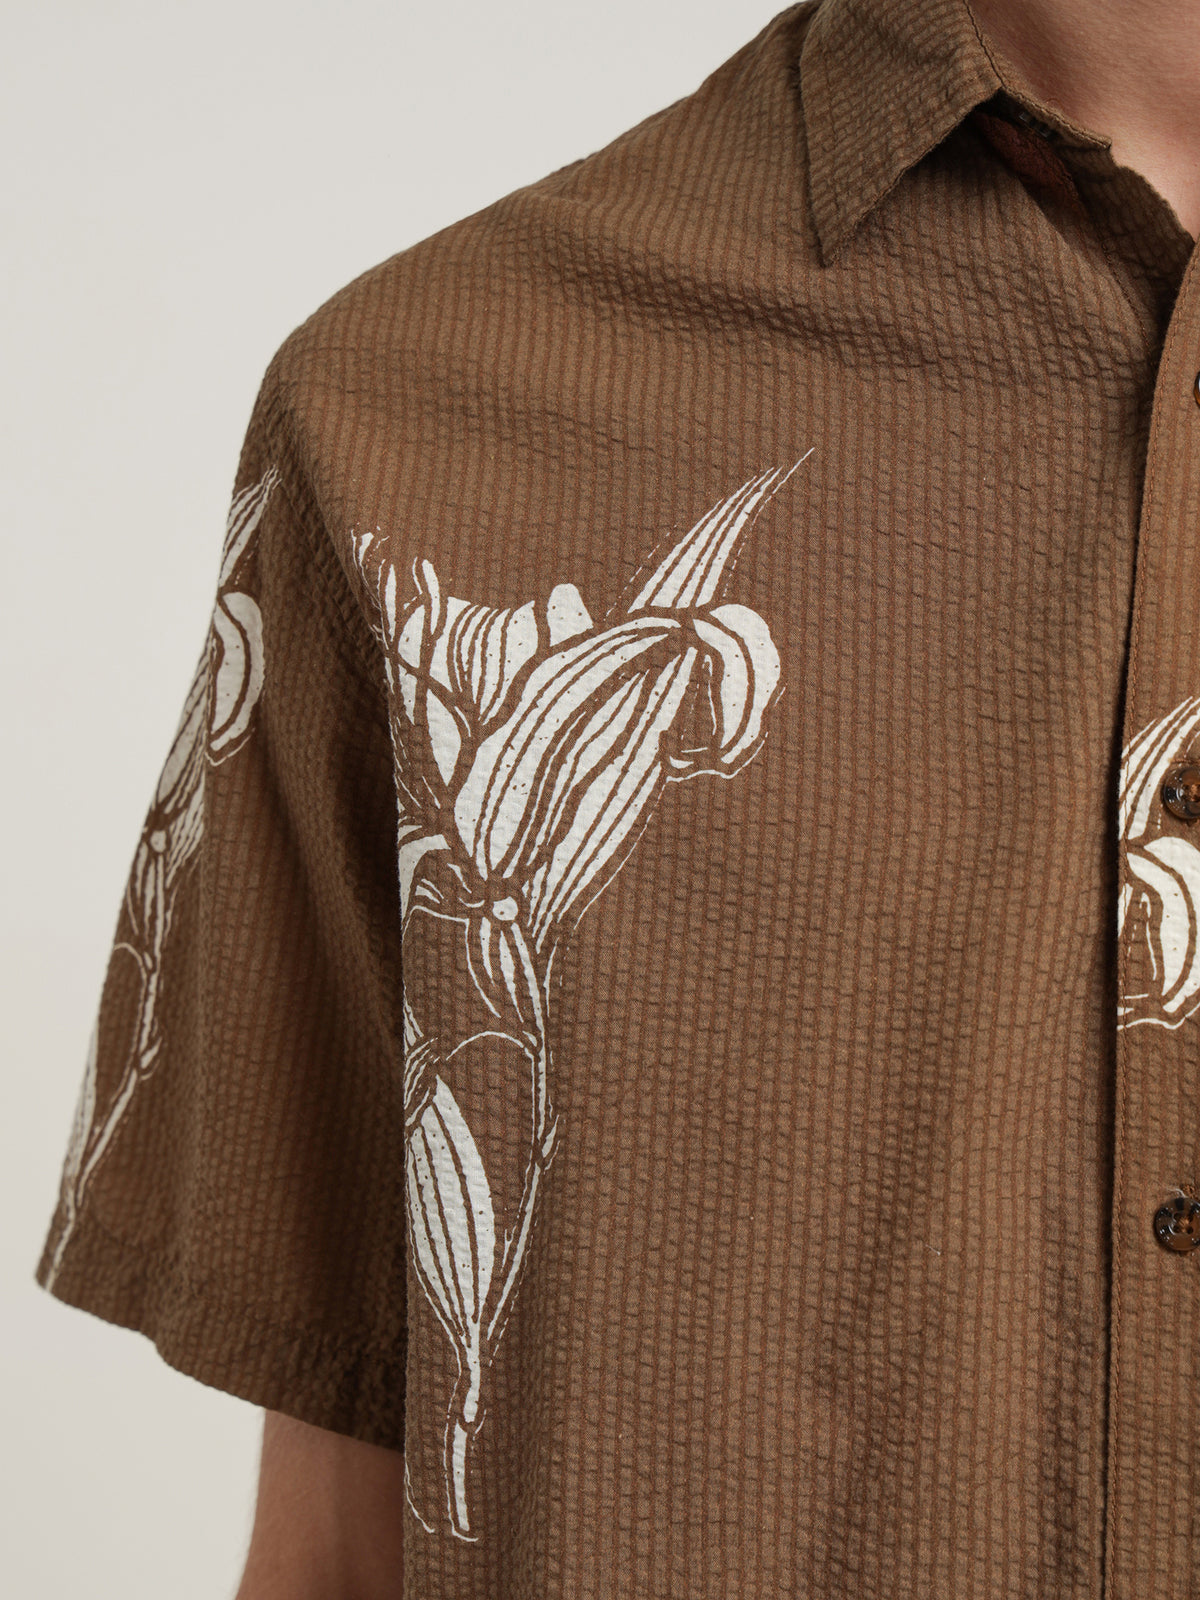 Royale Short Sleeve Shirt in Plantation Khaki Brown